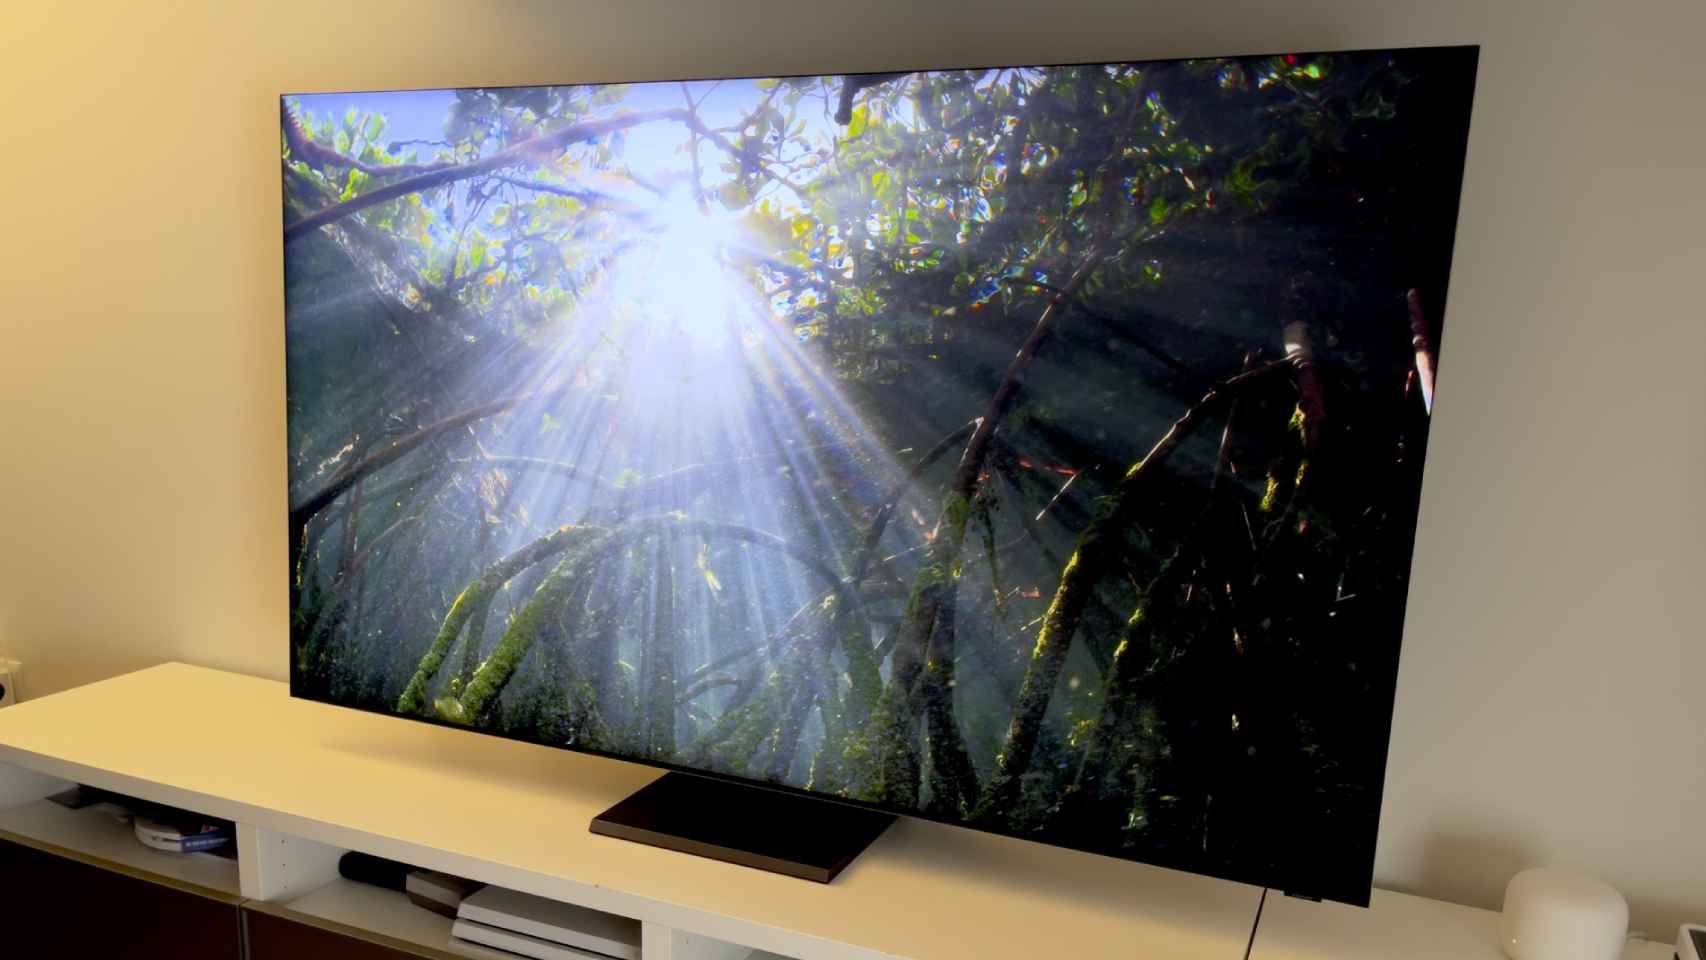 Comprar un televisor LG en 2021, ¿cuáles son los mejores modelos